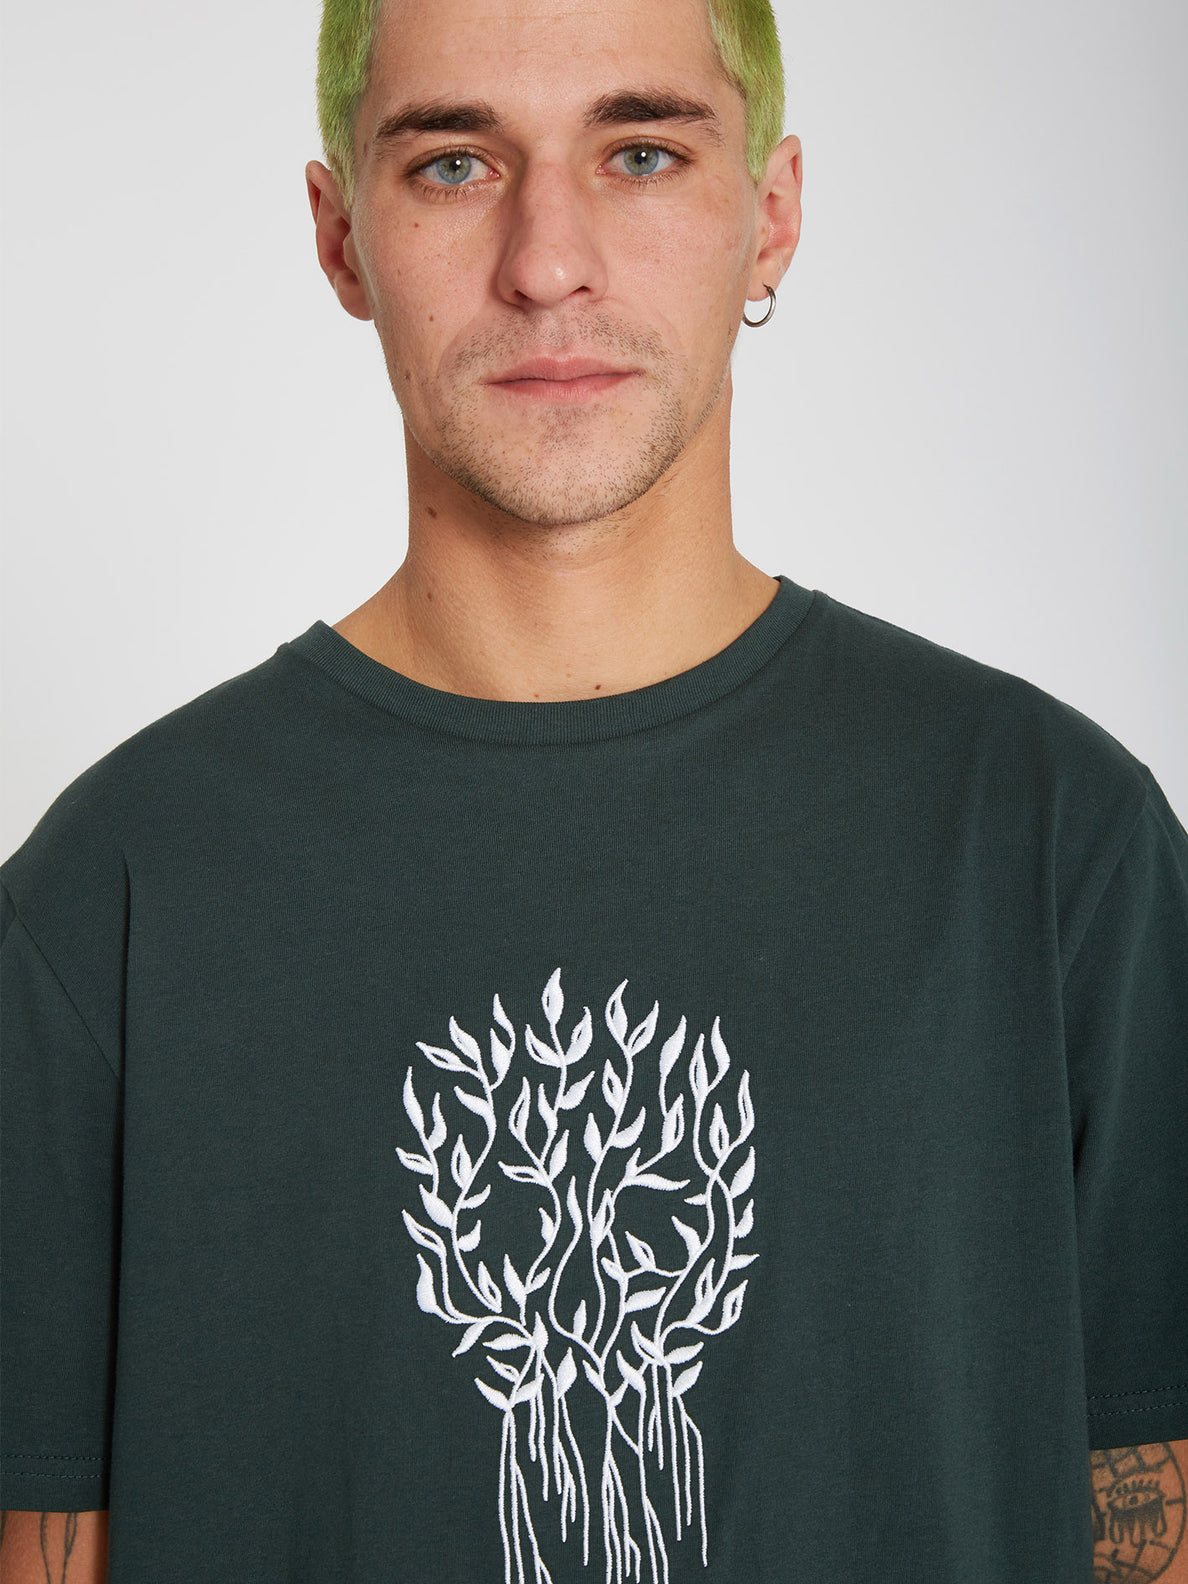 Vaderetro 2 T-shirt - CEDAR GREEN (A5232207_CDG) [10]